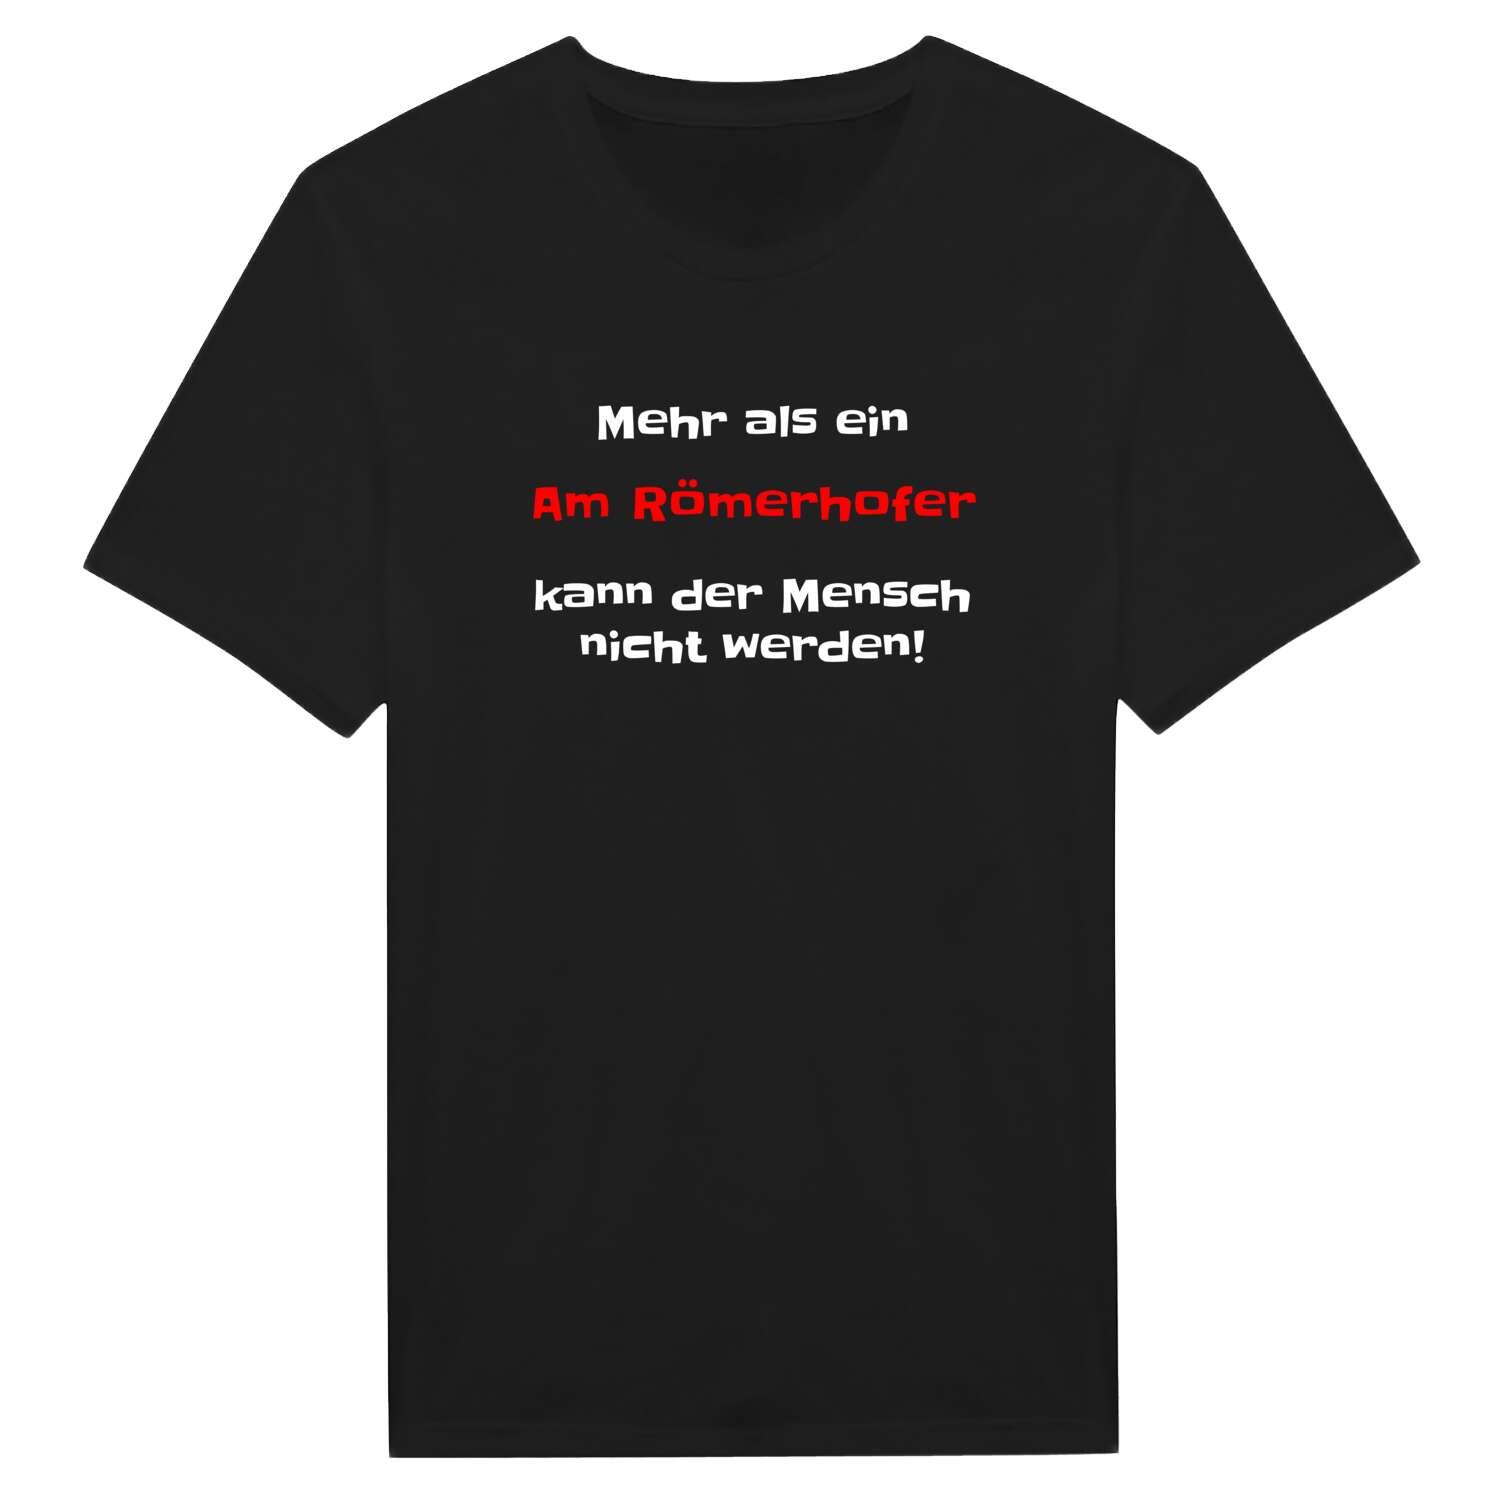 Am Römerhof T-Shirt »Mehr als ein«